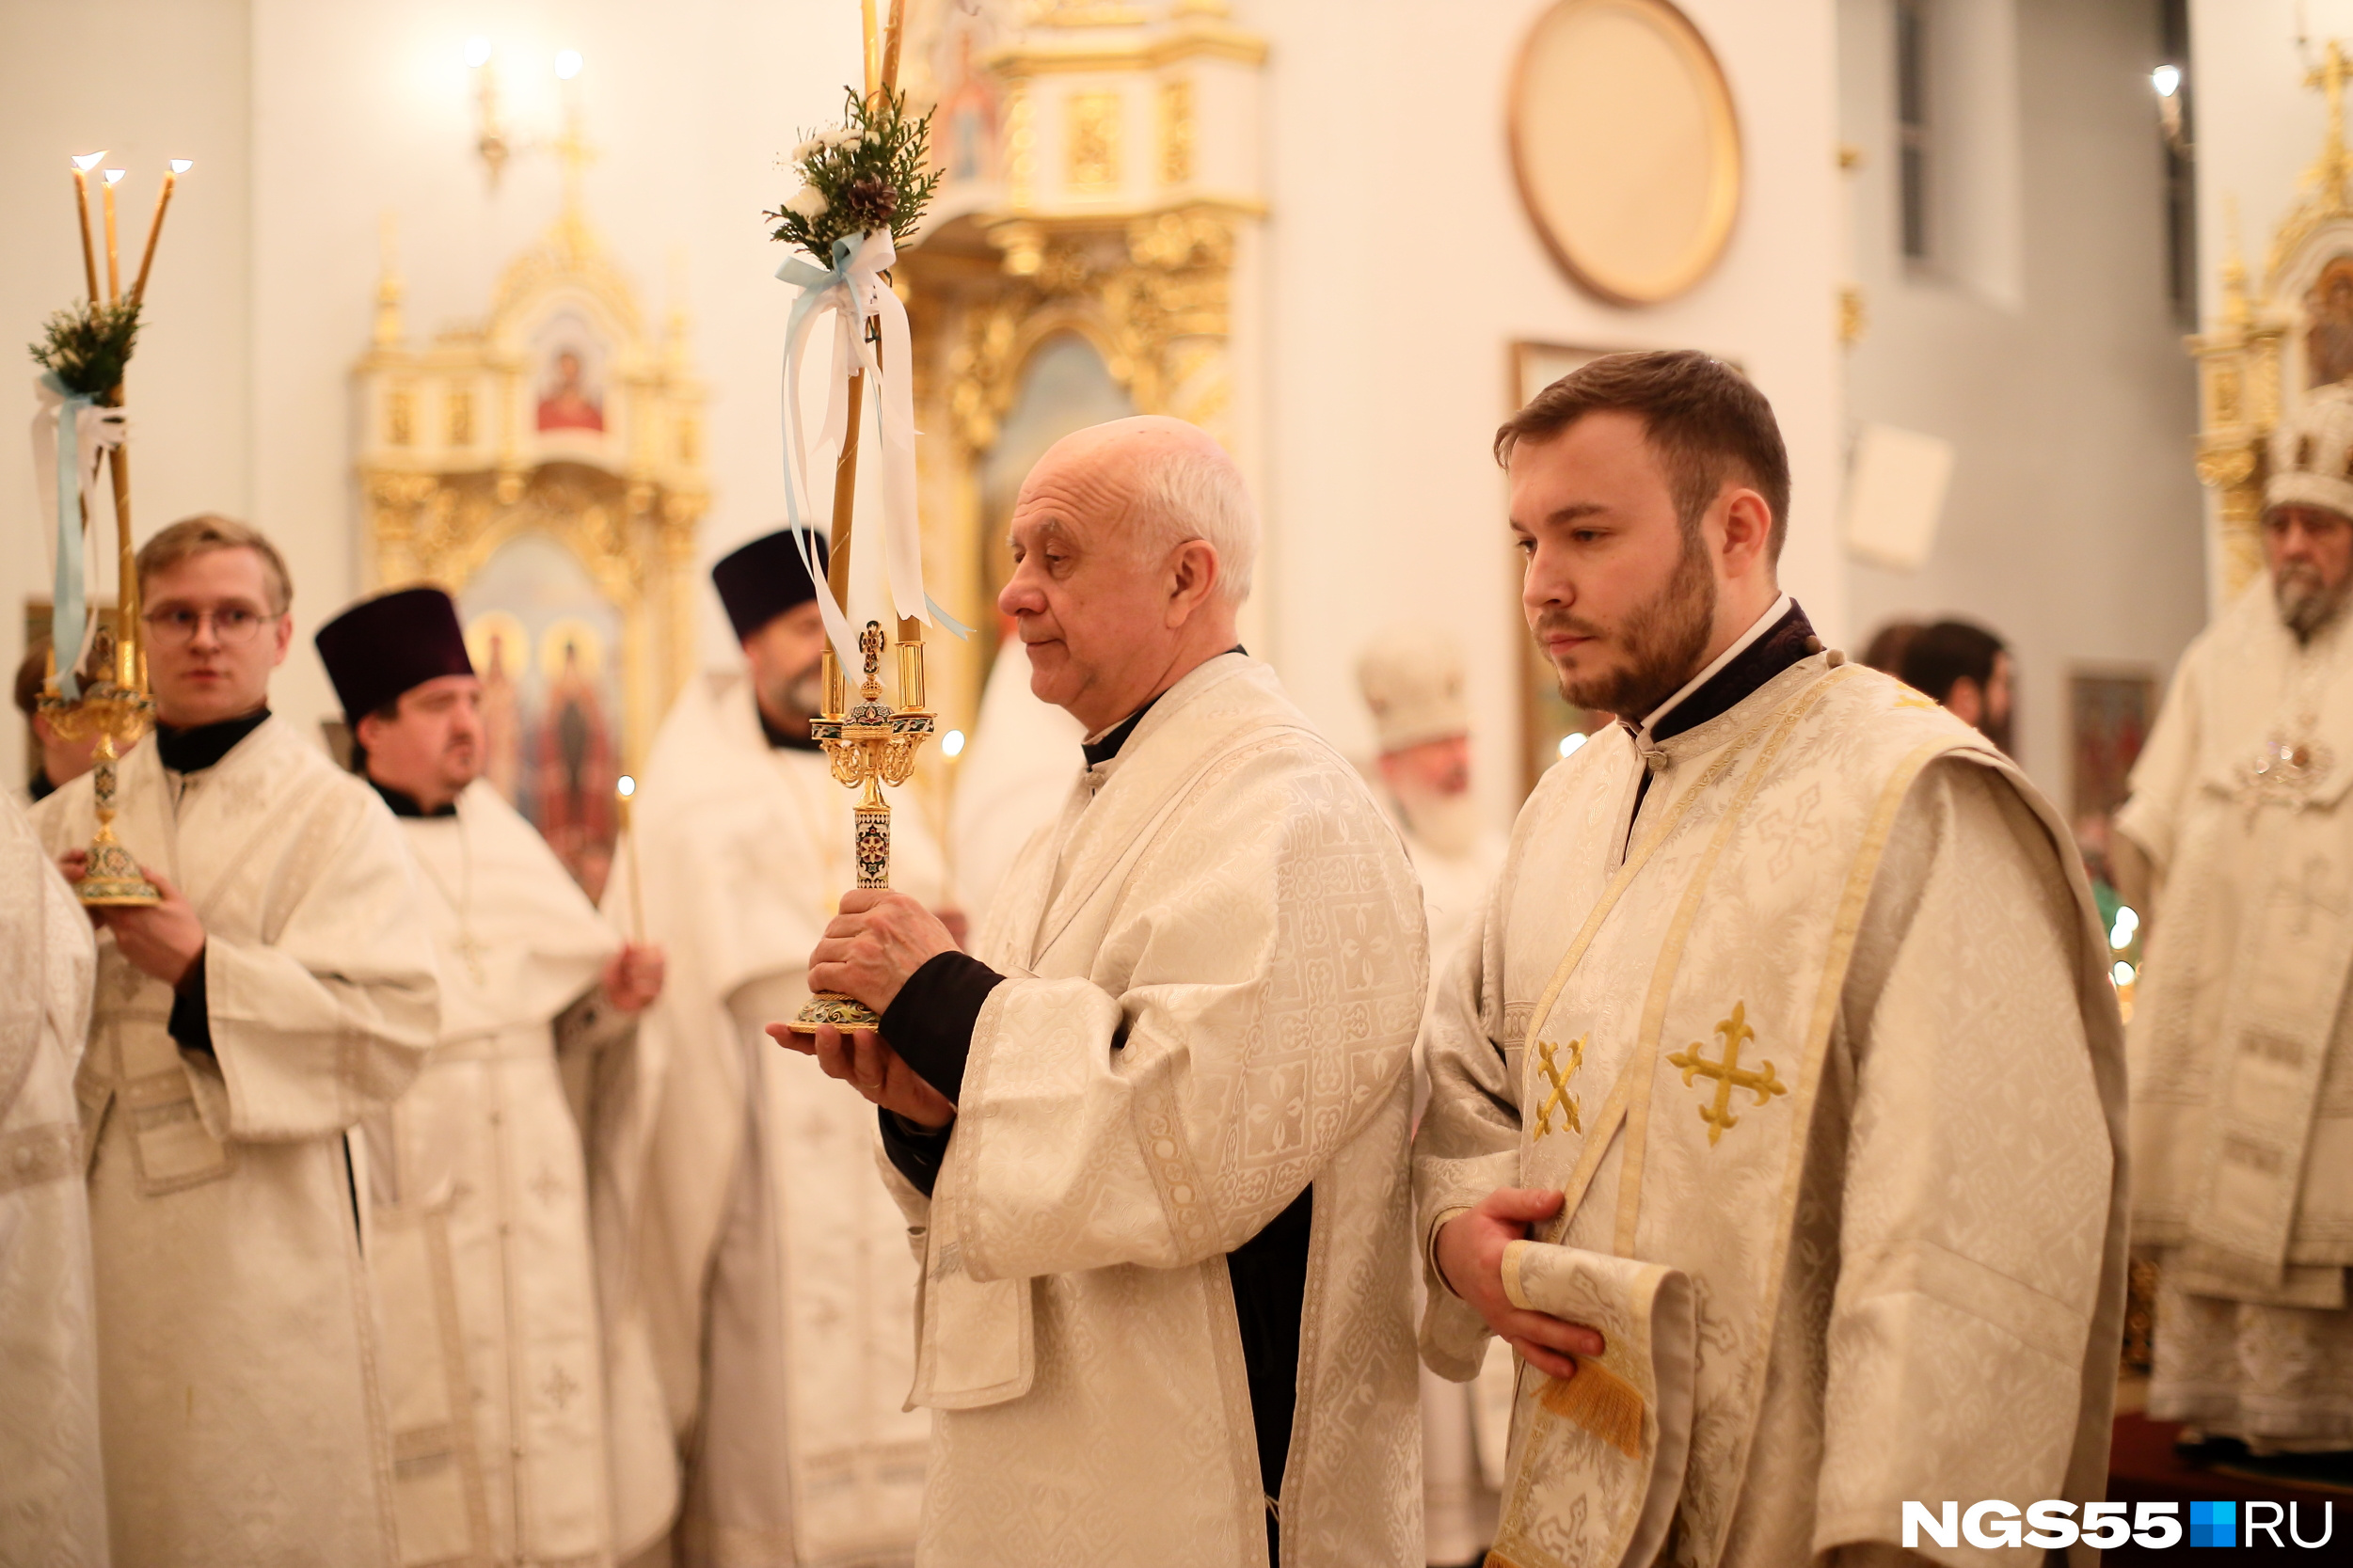 Белая одежда священников — как напоминание о пеленах младенца Христа и ангелах